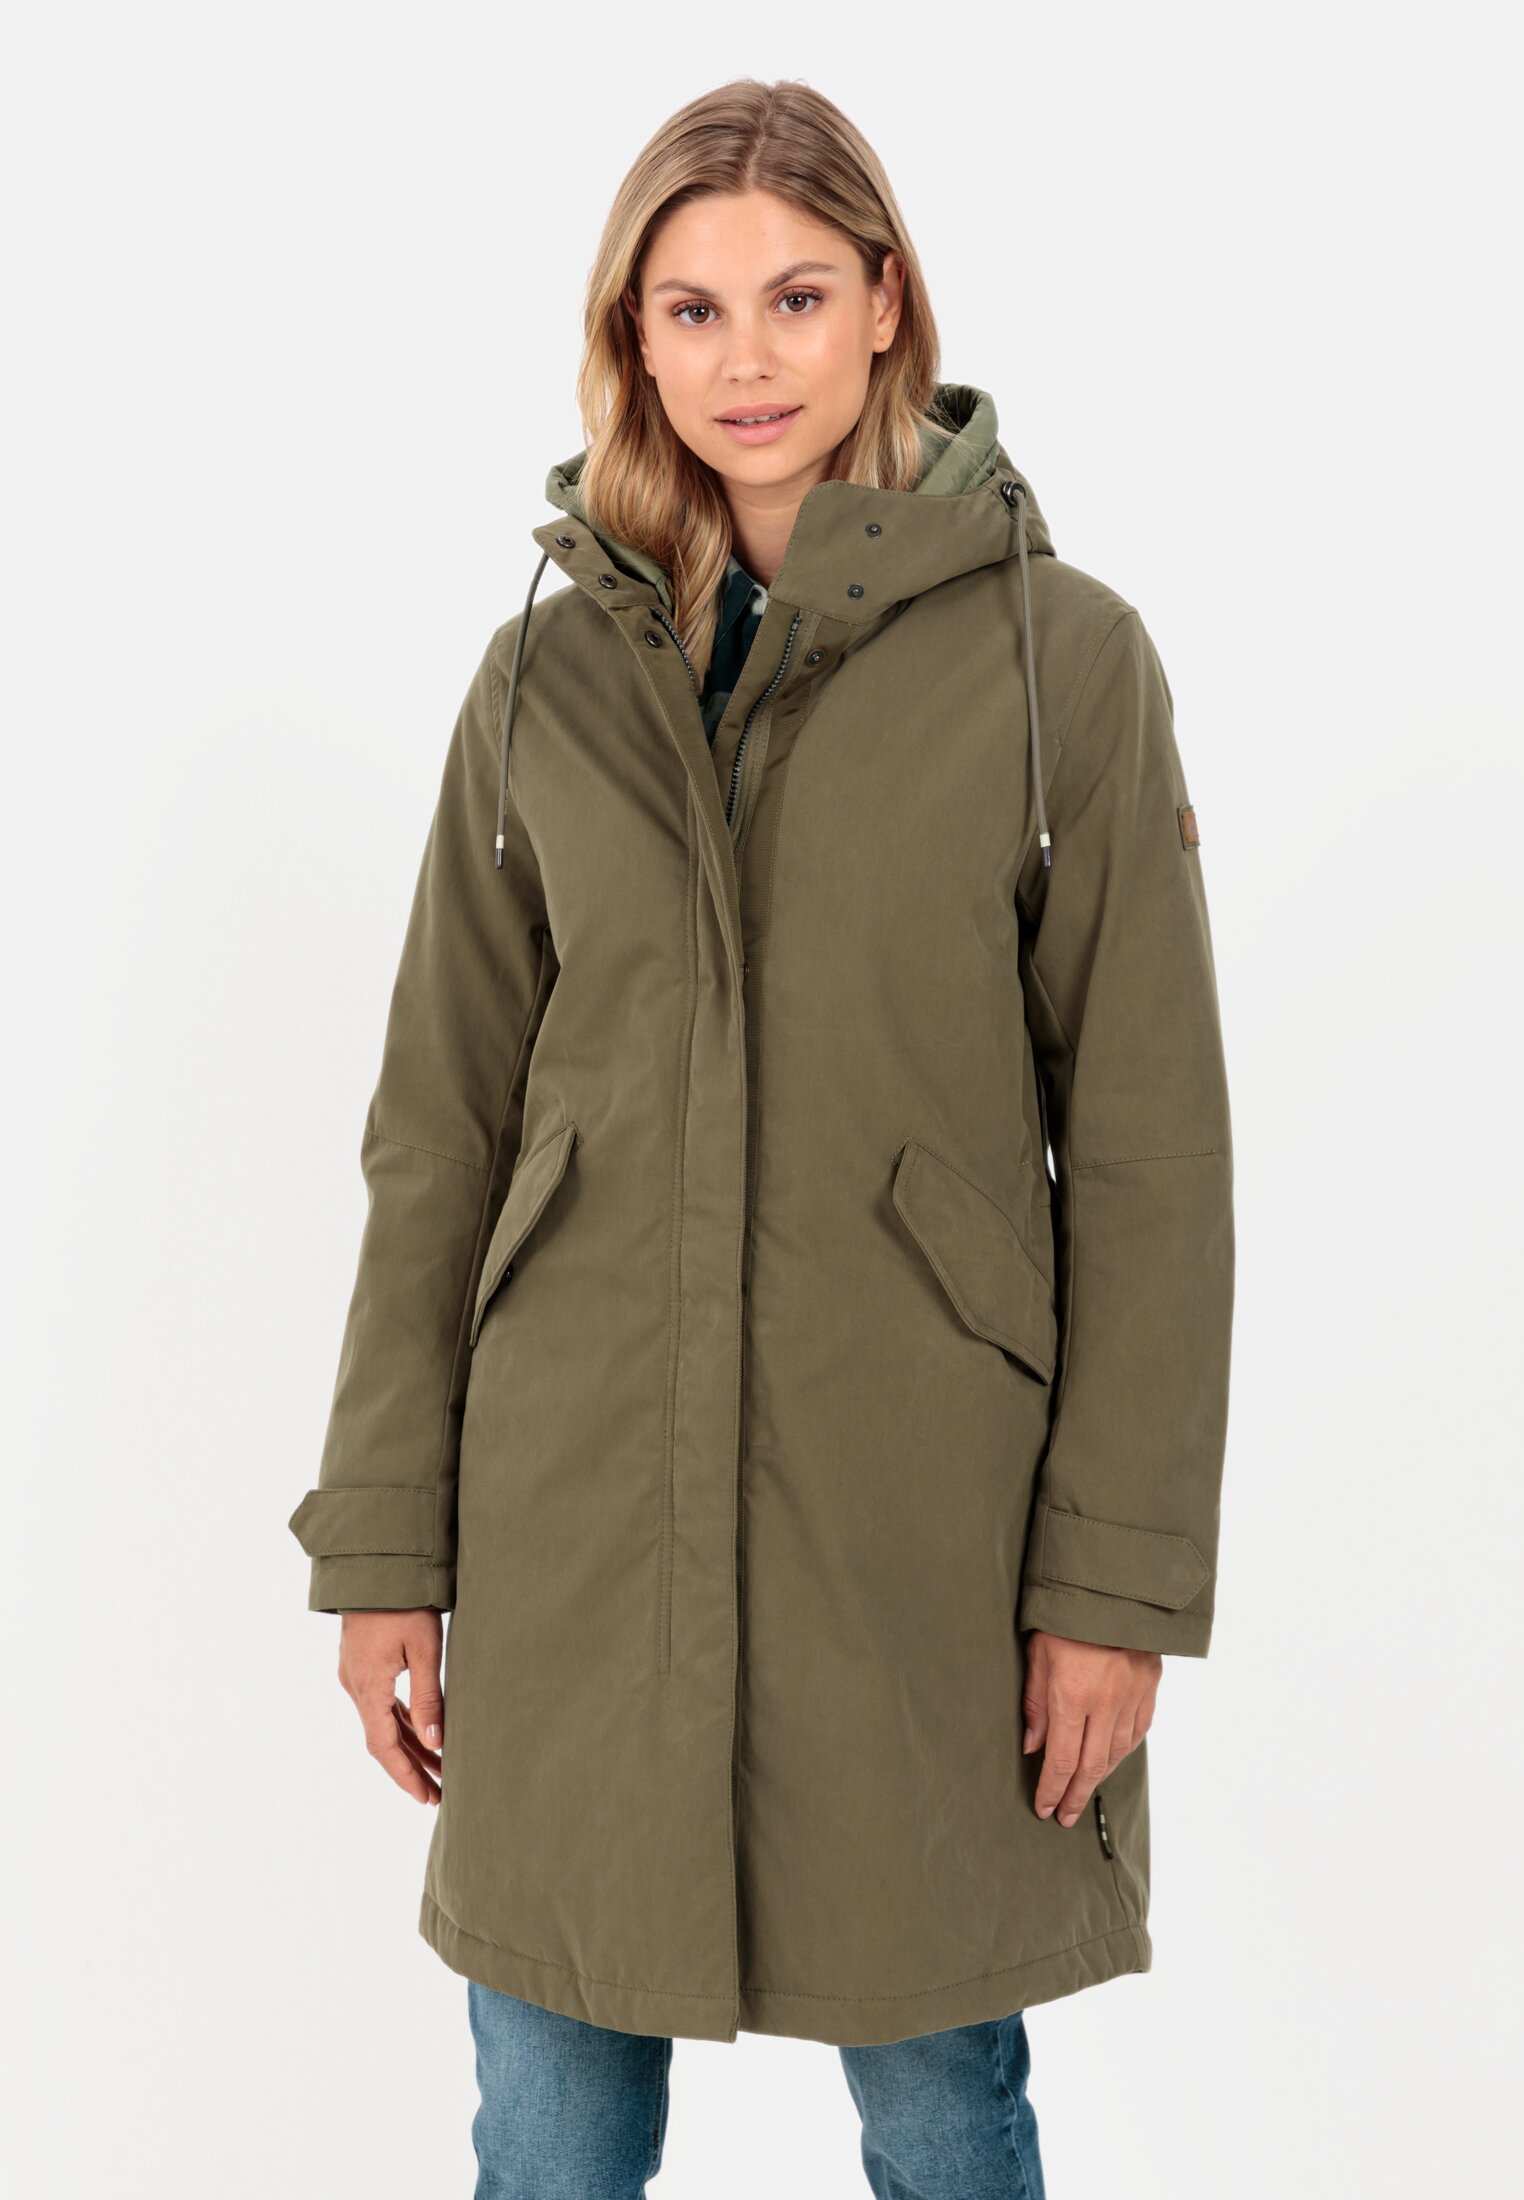 Women's winter jackets online | camel active